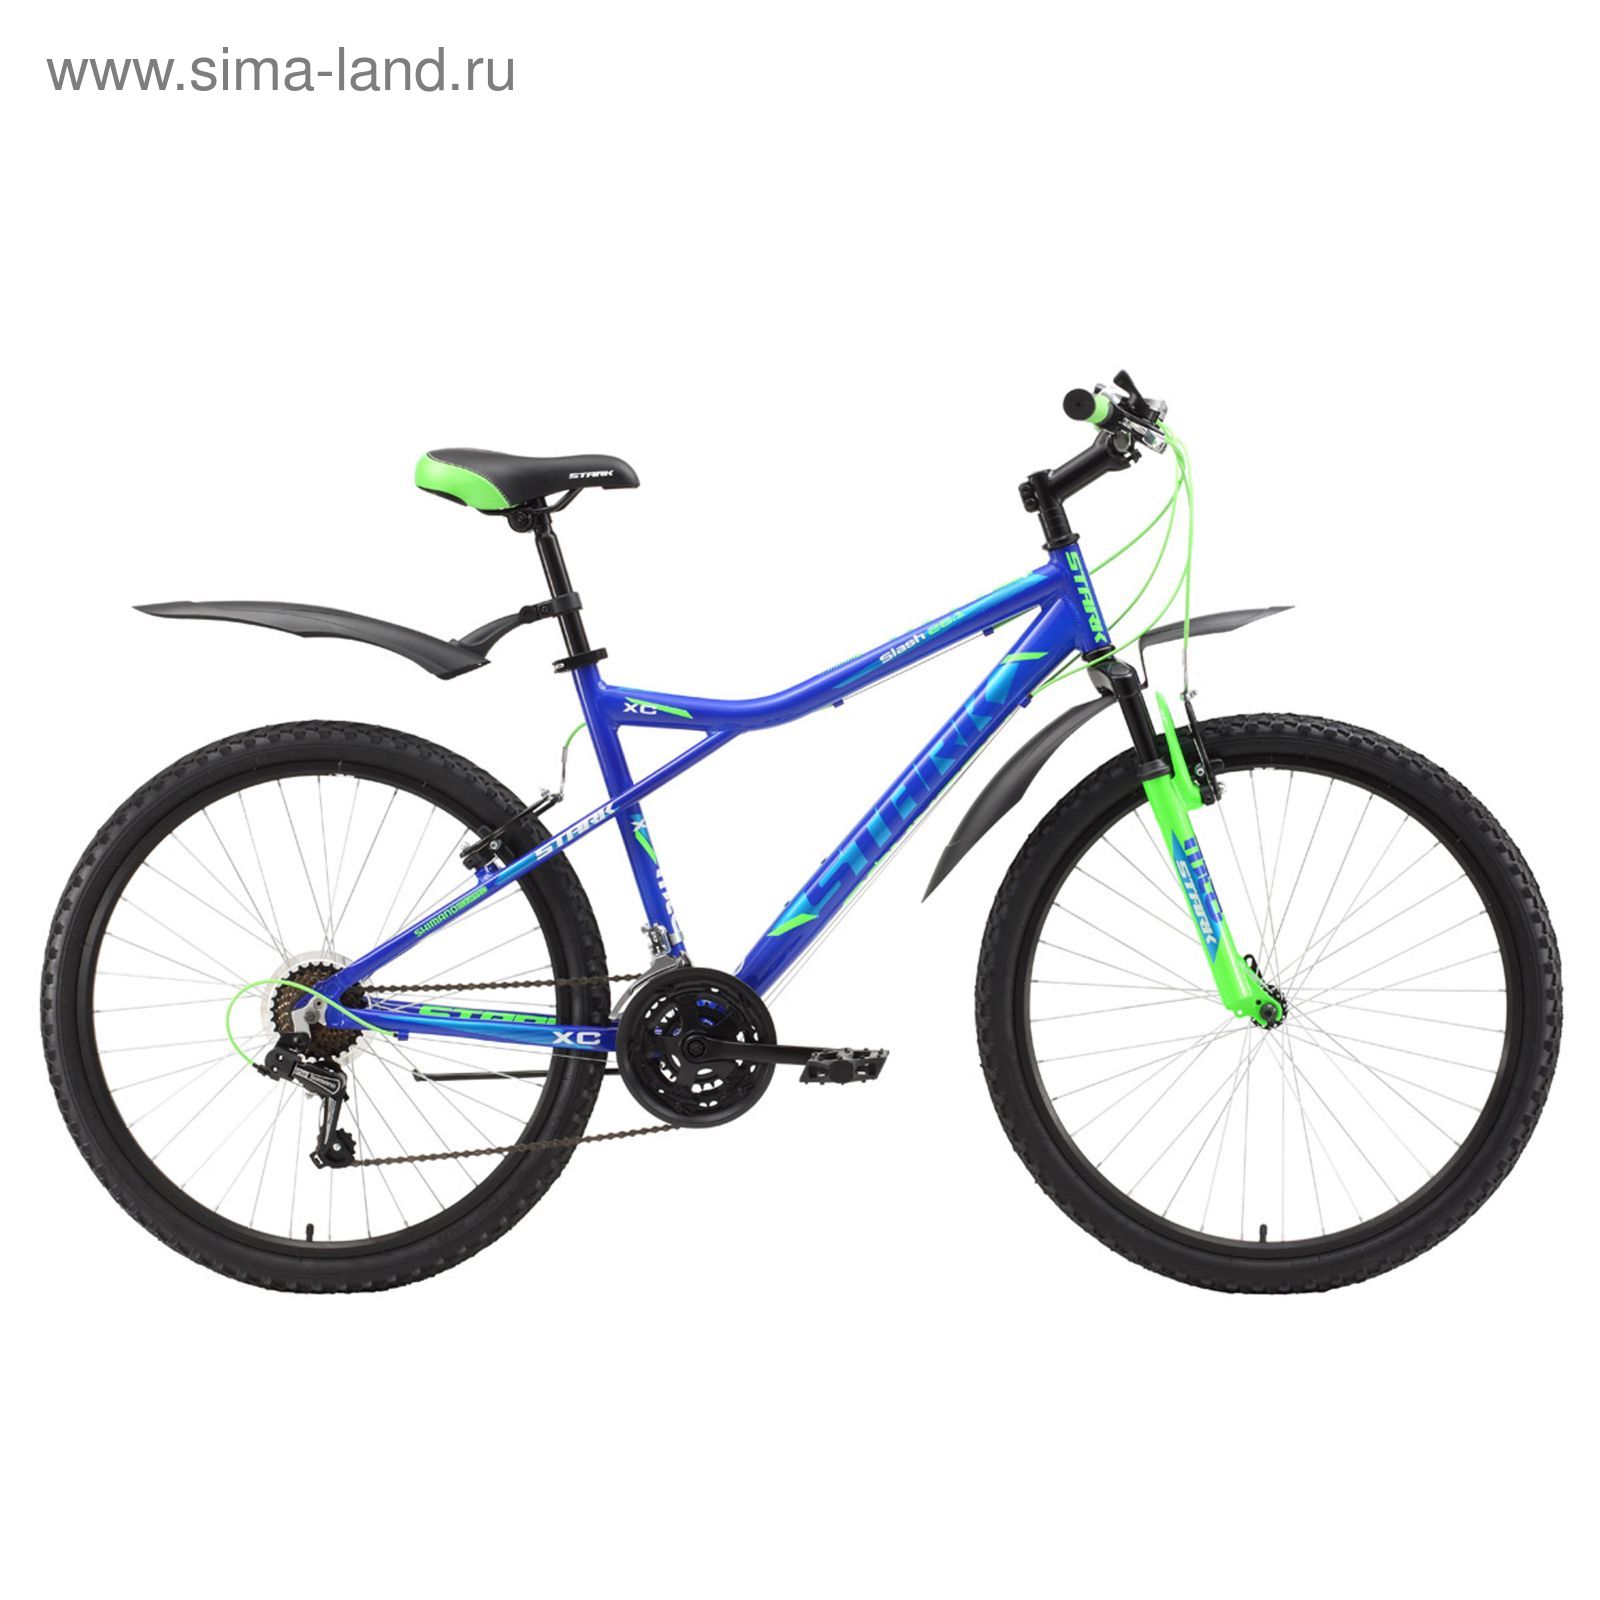 Велосипед 26" Stark Slash 1 V, 2017, цвет сине-зеленый, размер 14,5"